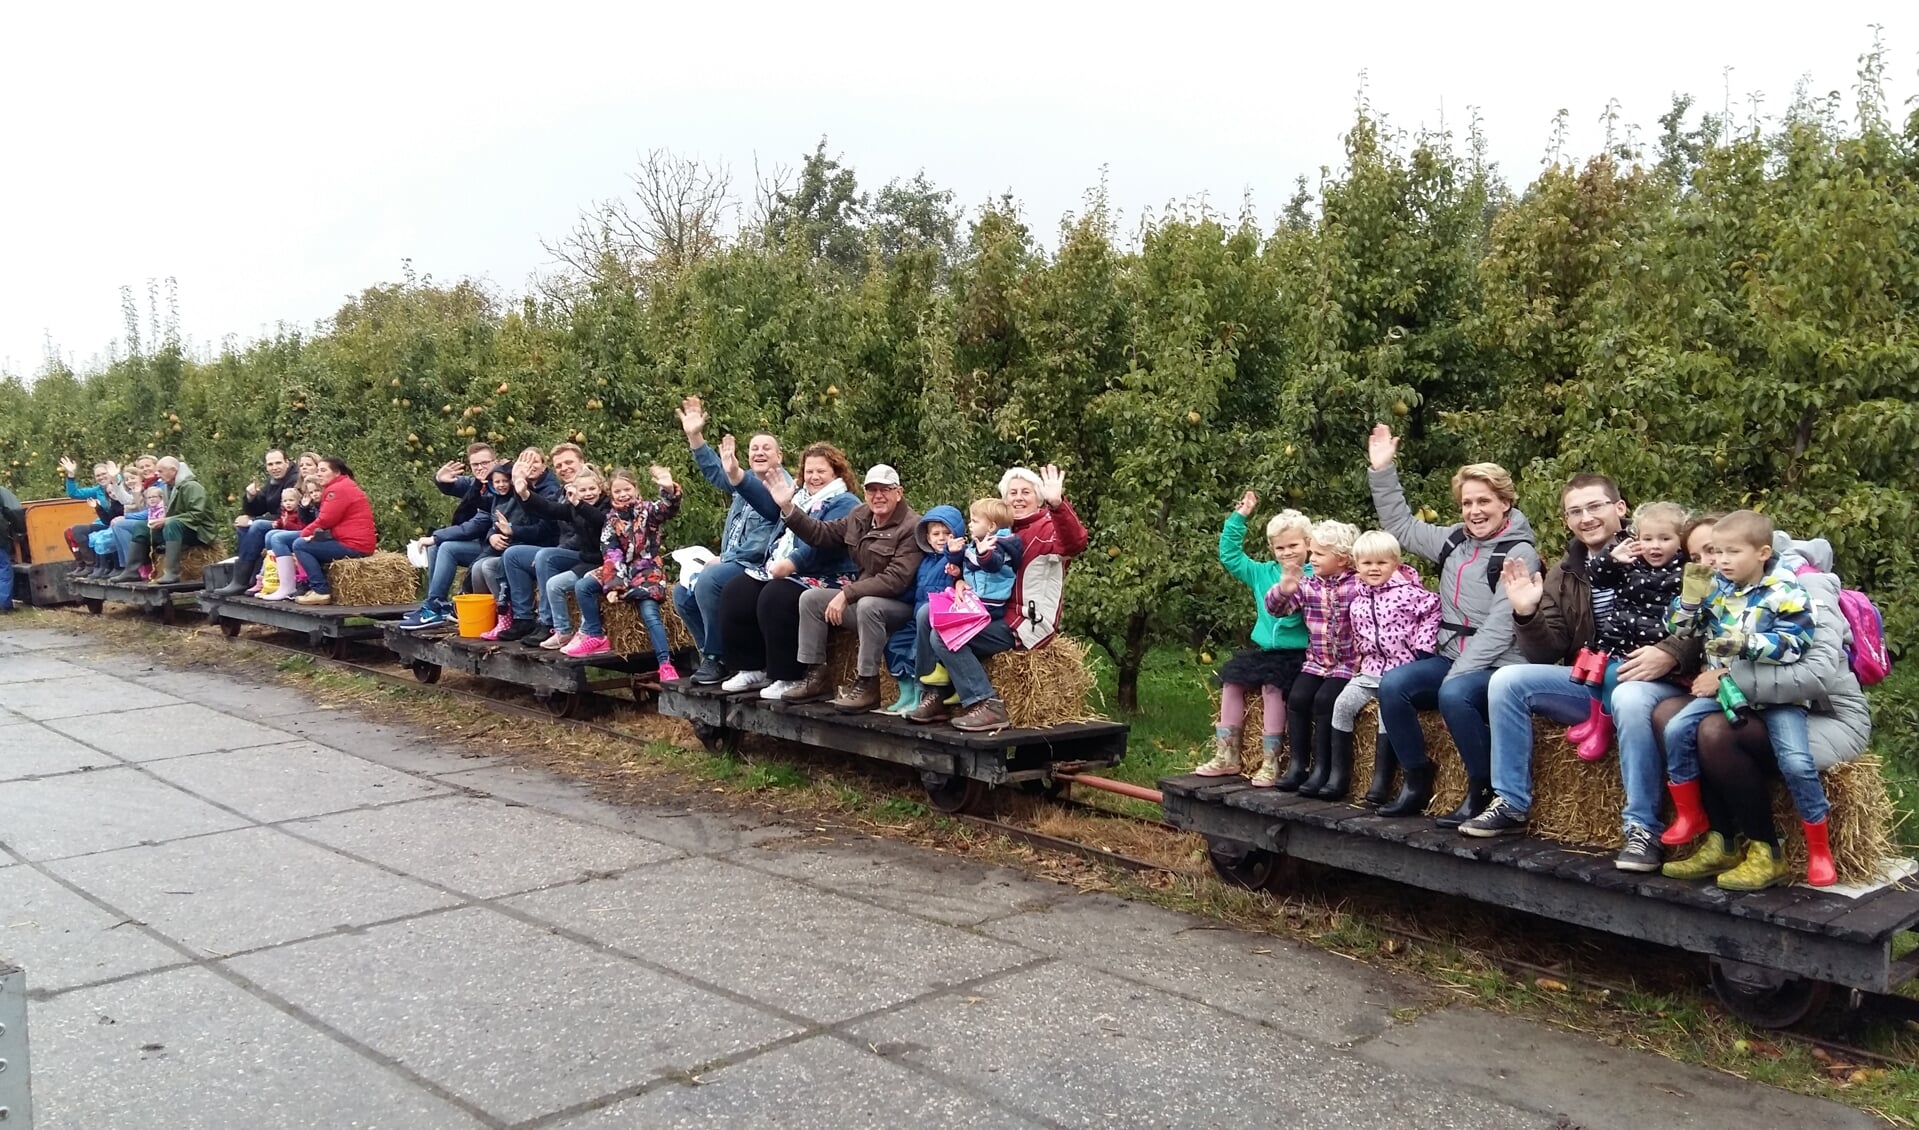 Het treintje brengt de bezoekers naar de boomgaard en terug. 